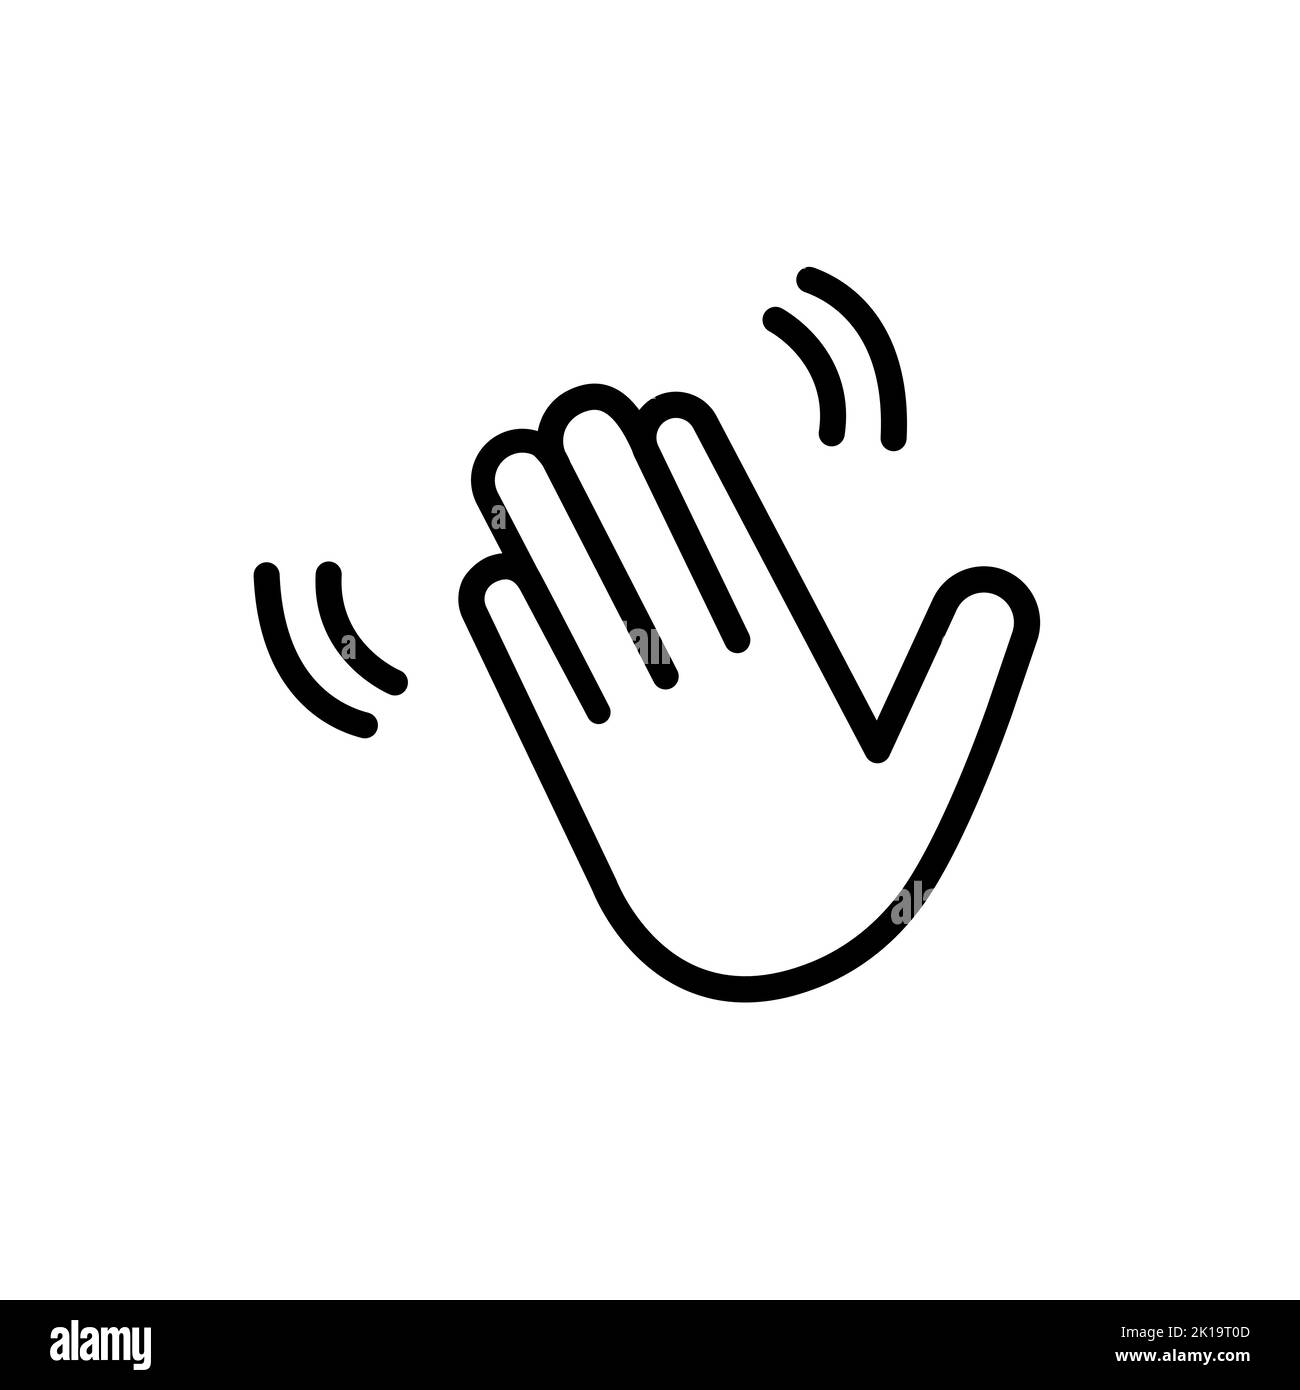 Lineare schwarze Palmsymbol. Konzept der freundlichen Einladung, Welle Hand hallo, Begrüßung verbale Signal, lustig komisch Gruß Nachricht, heulig. Einfache moderne obje Stock Vektor